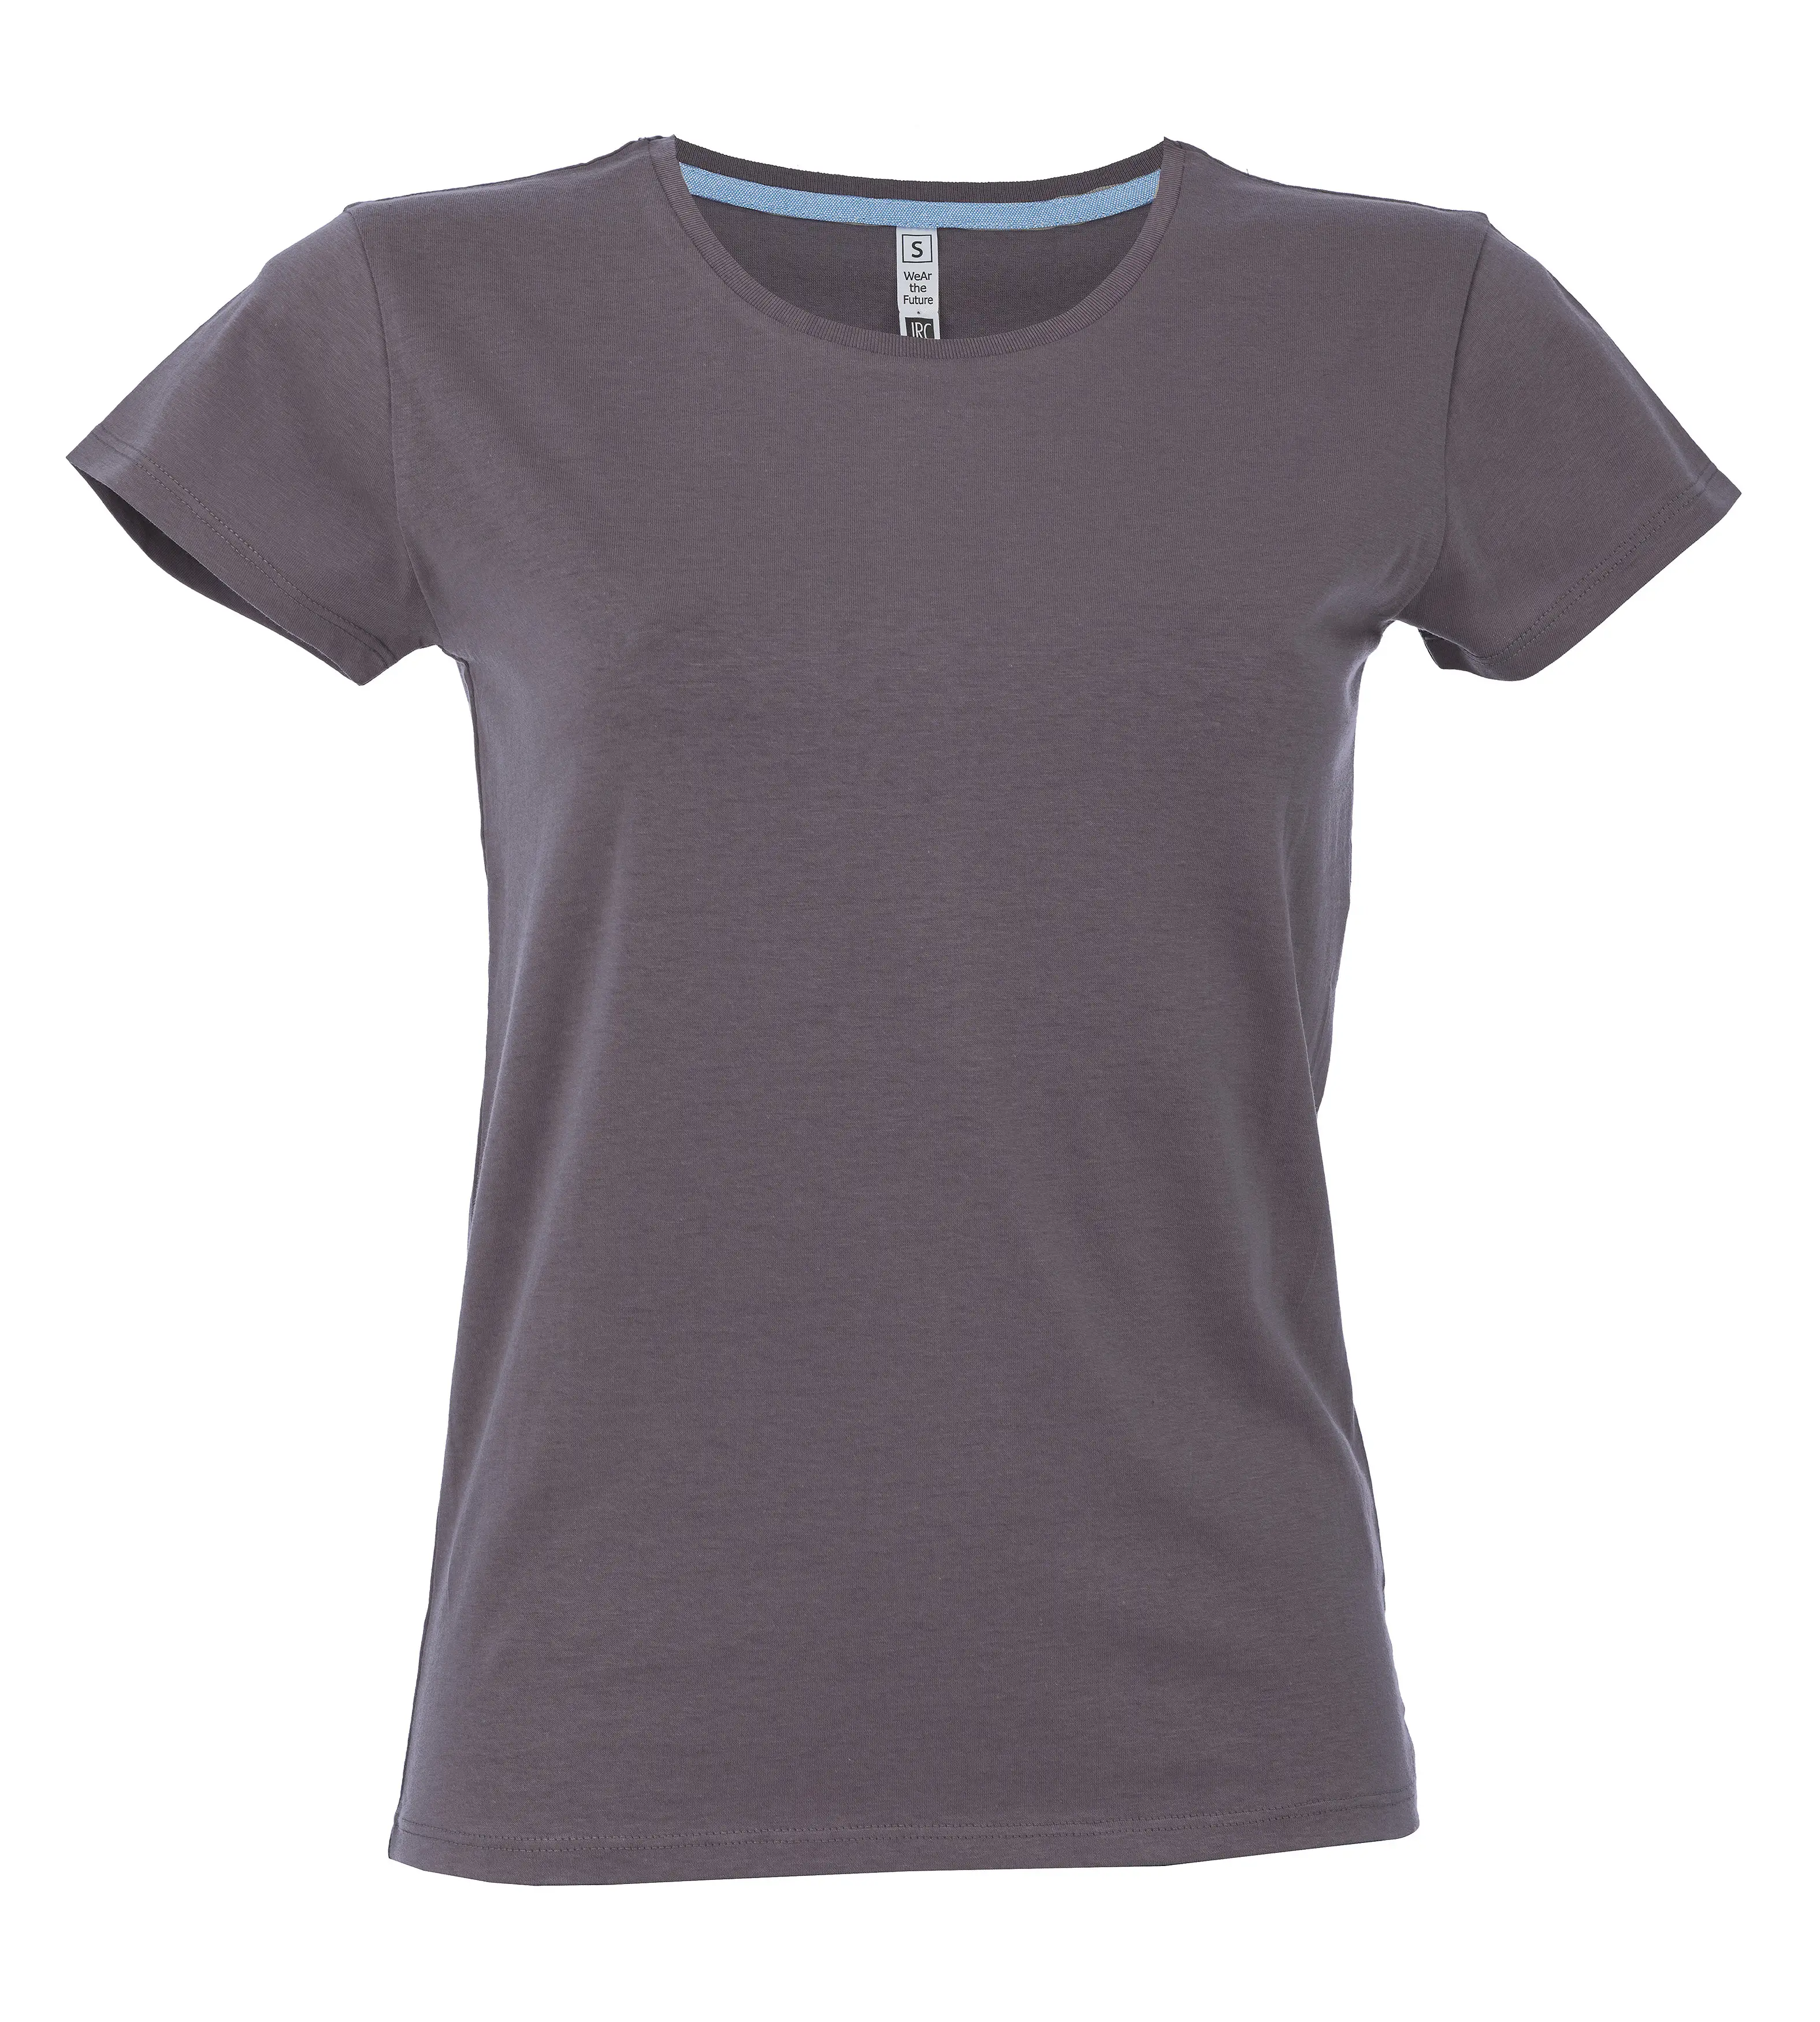 T-Shirt Manica Corta Donna Cotone Personalizzata - James Ross Collection